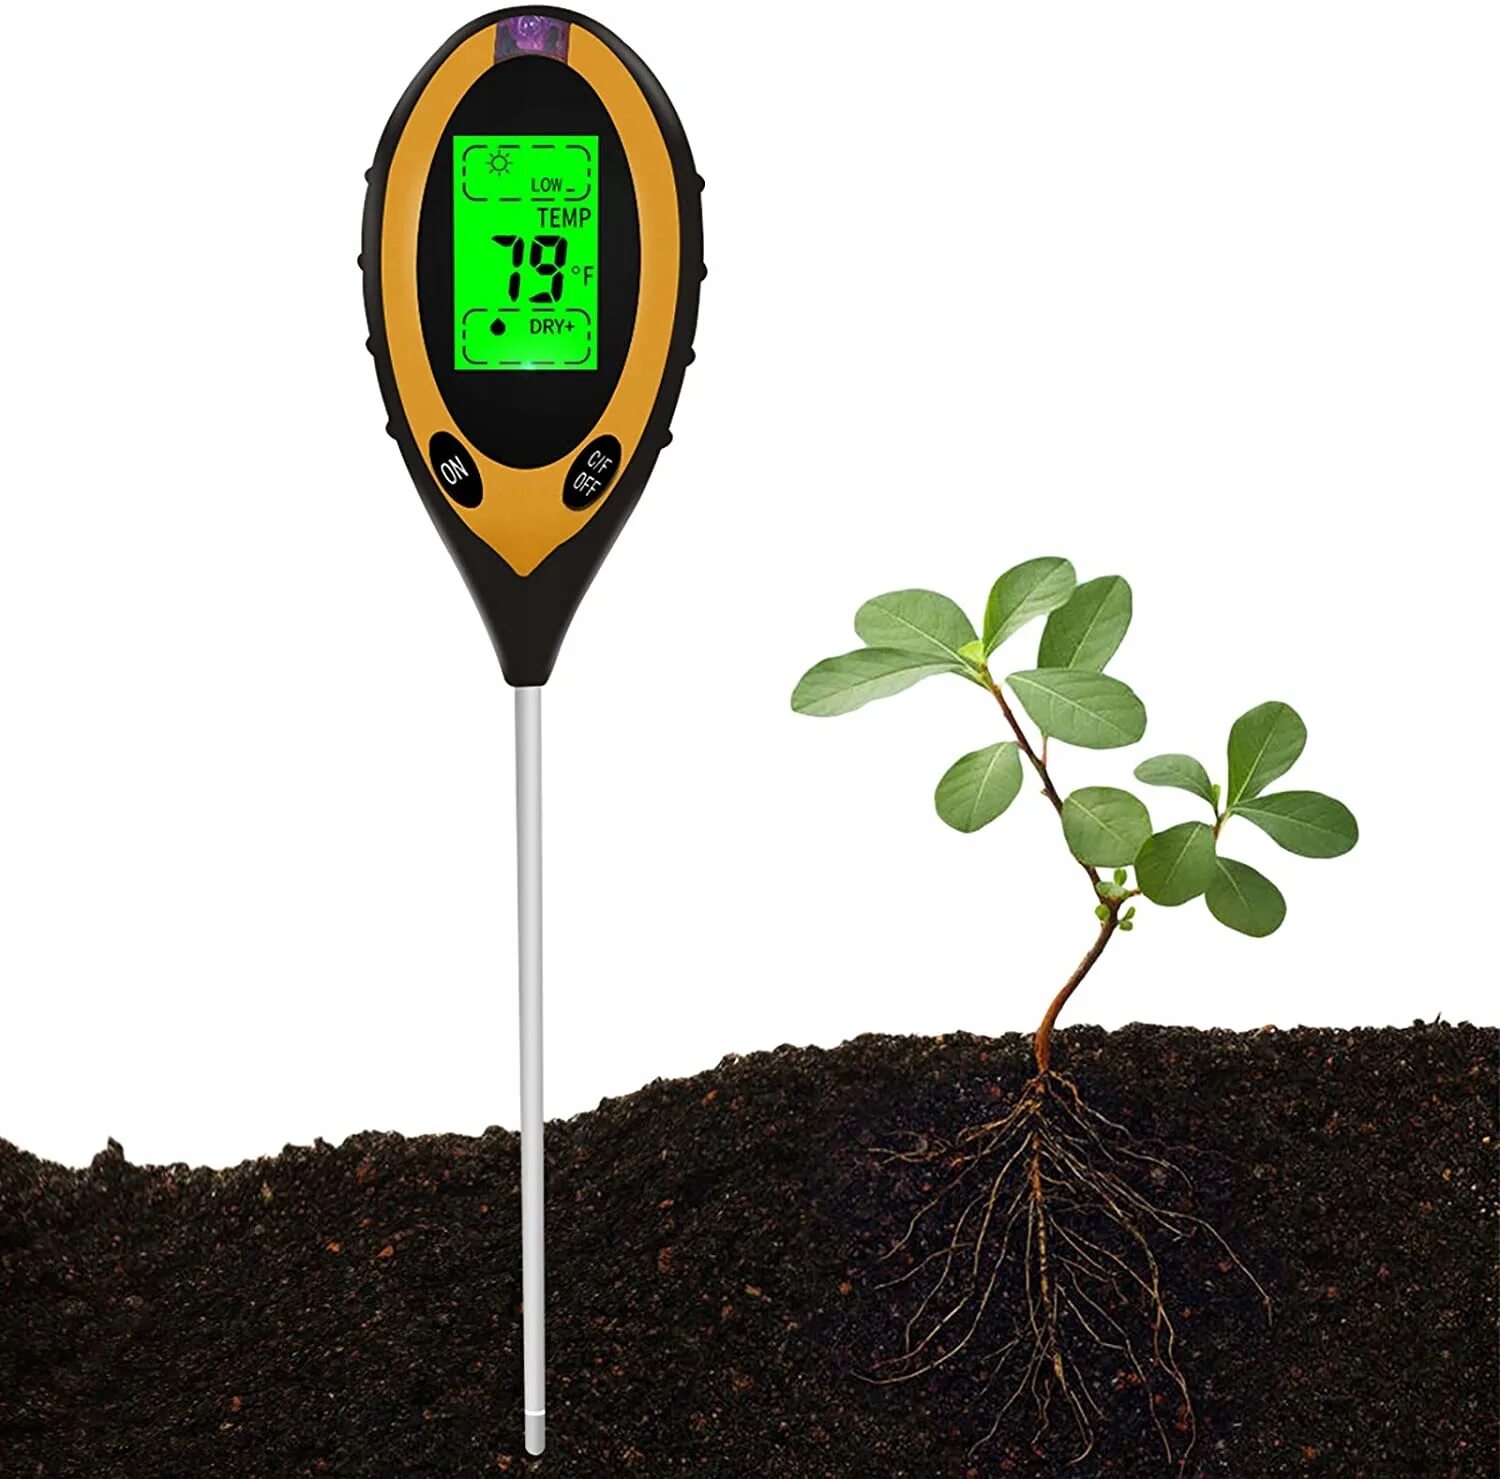 Какой измеритель почвы лучше. Измеритель кислотности влажности и освещенности почвы 3 в 1. PH метр для почвы 3-1 n-1 Moisture Meter. Измерение кислотности почвы прибор PH метр. Влагомер PH метр почвы.